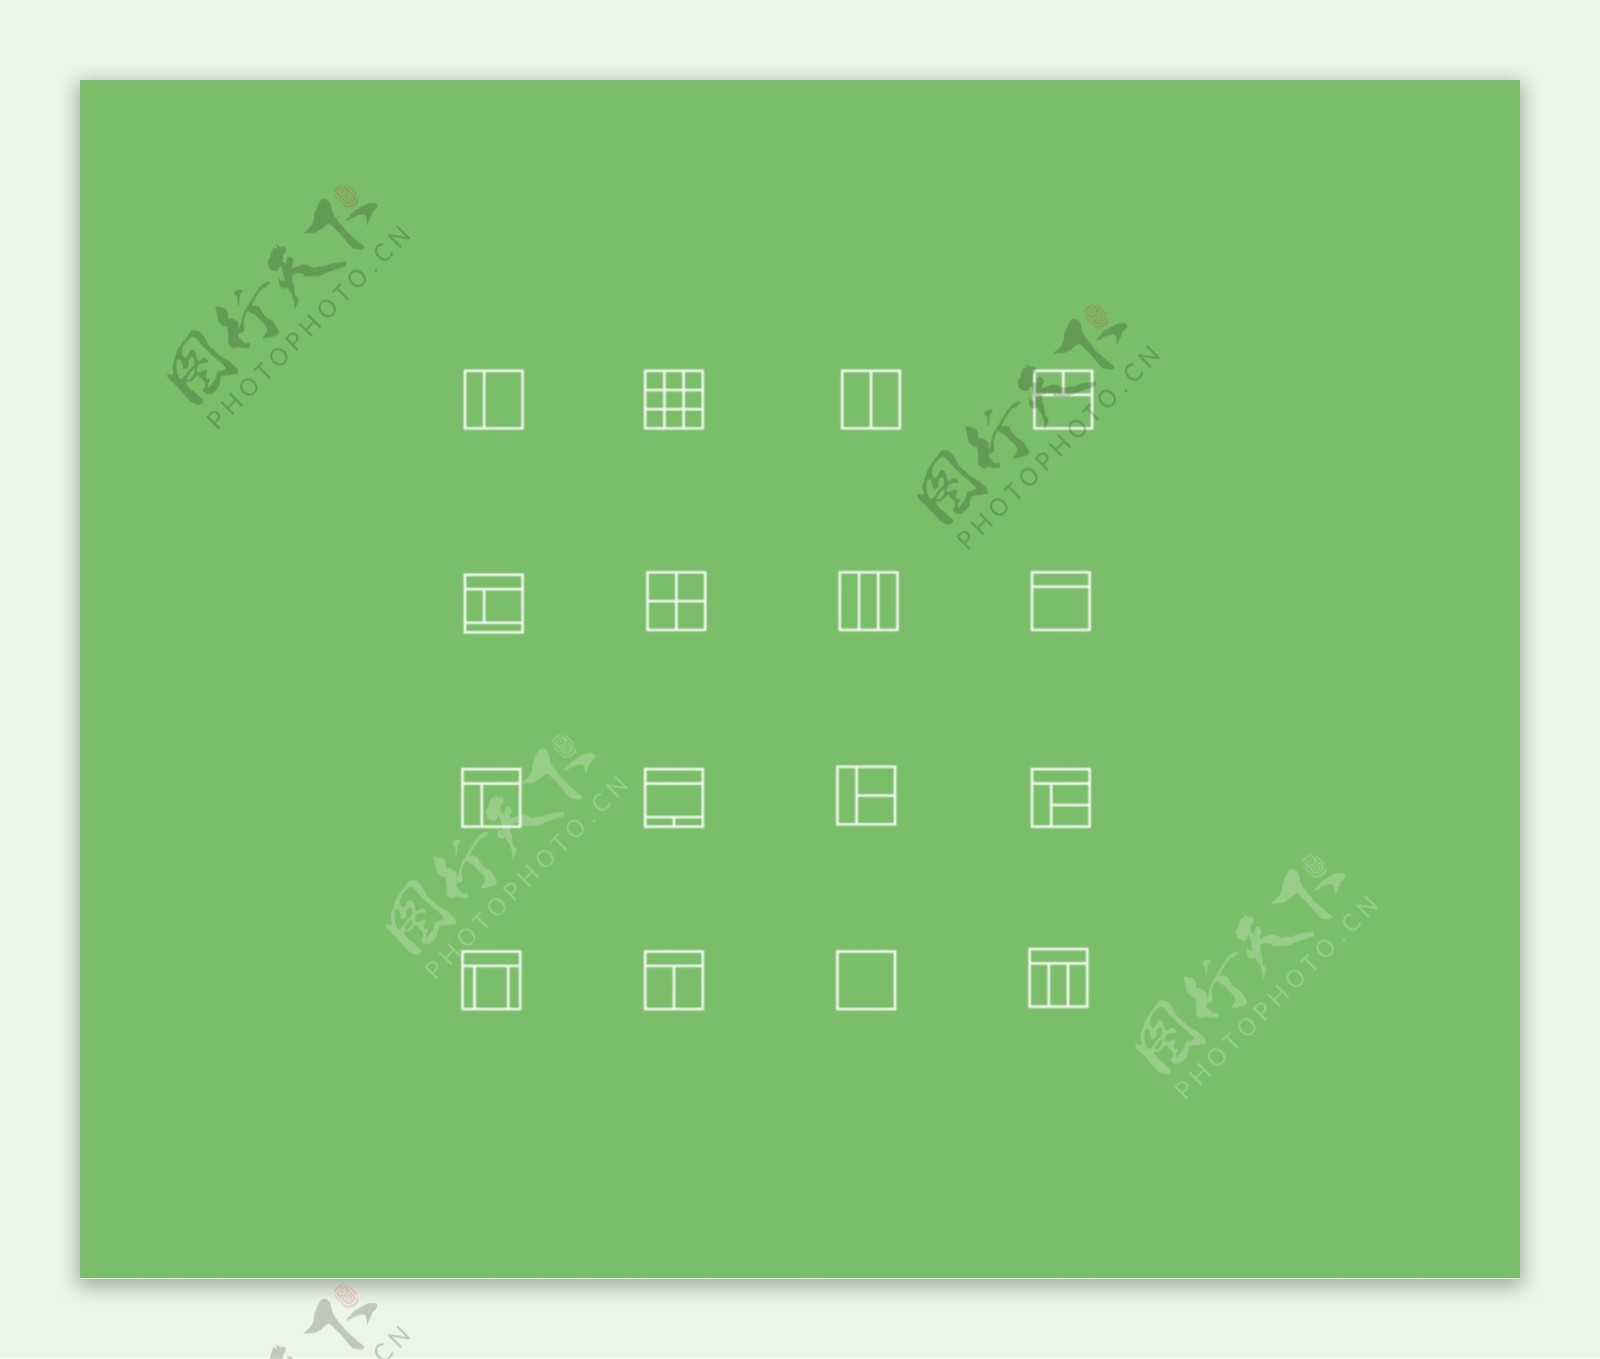 16个简单的矢量布局图标的样式设置